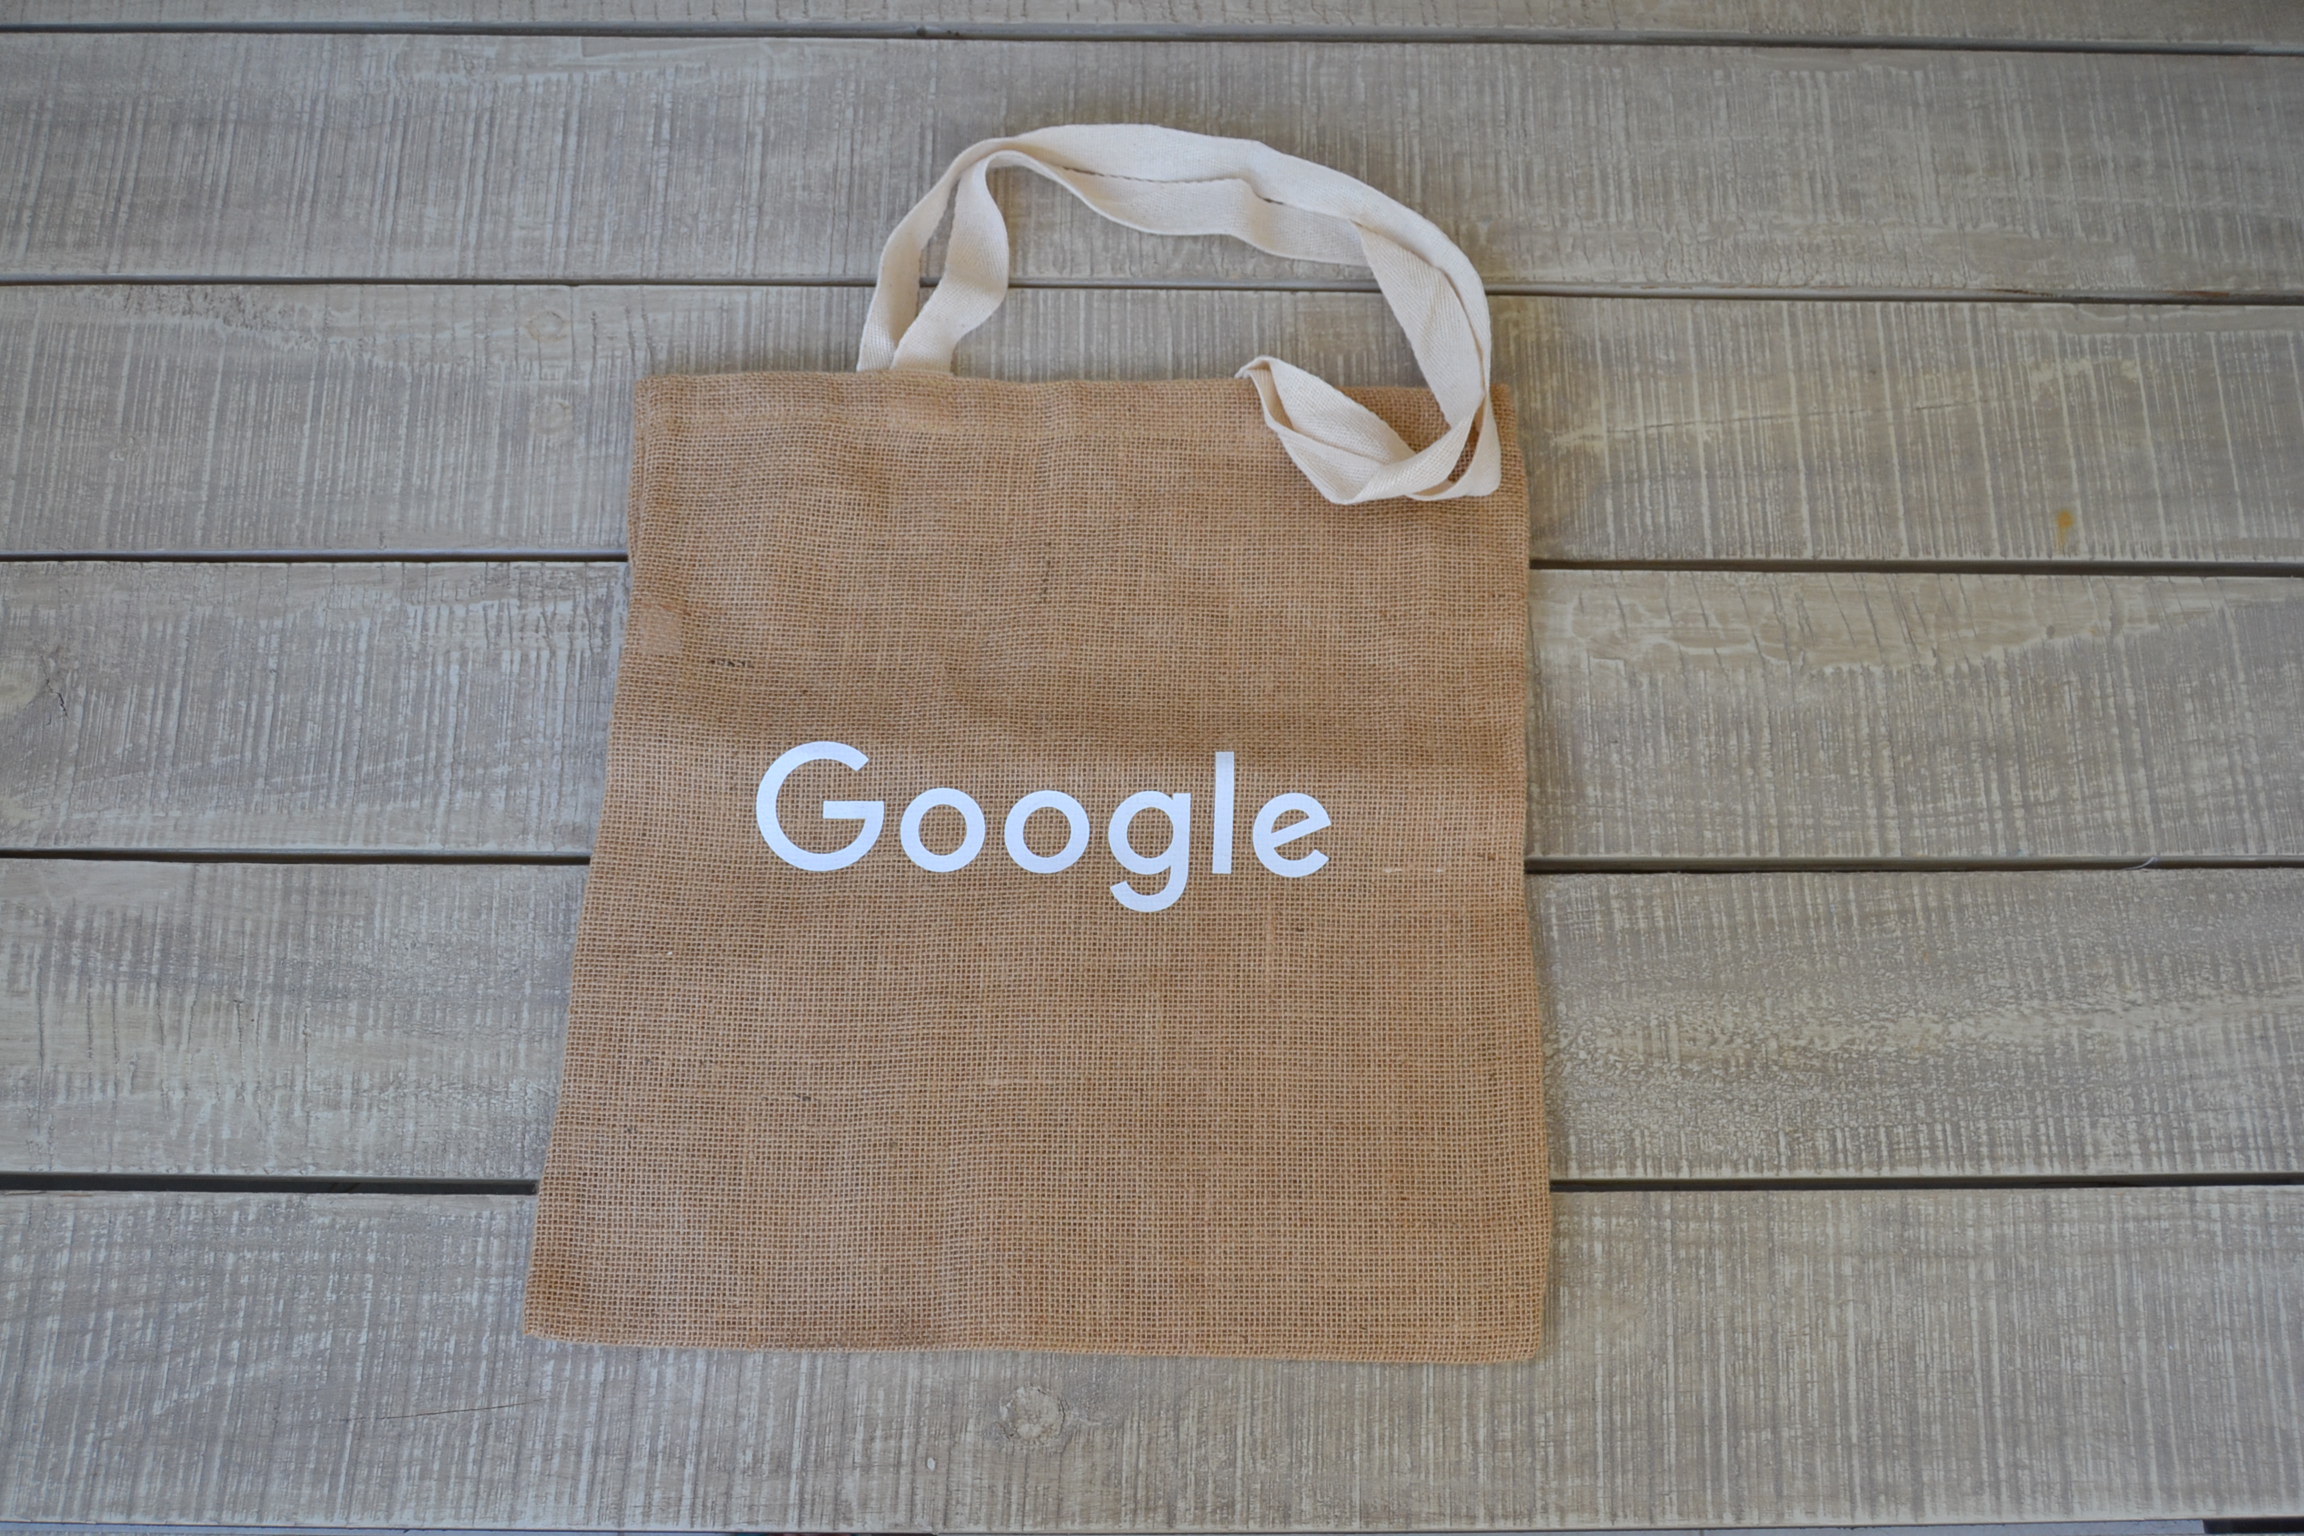 Google Antitheft Backpack